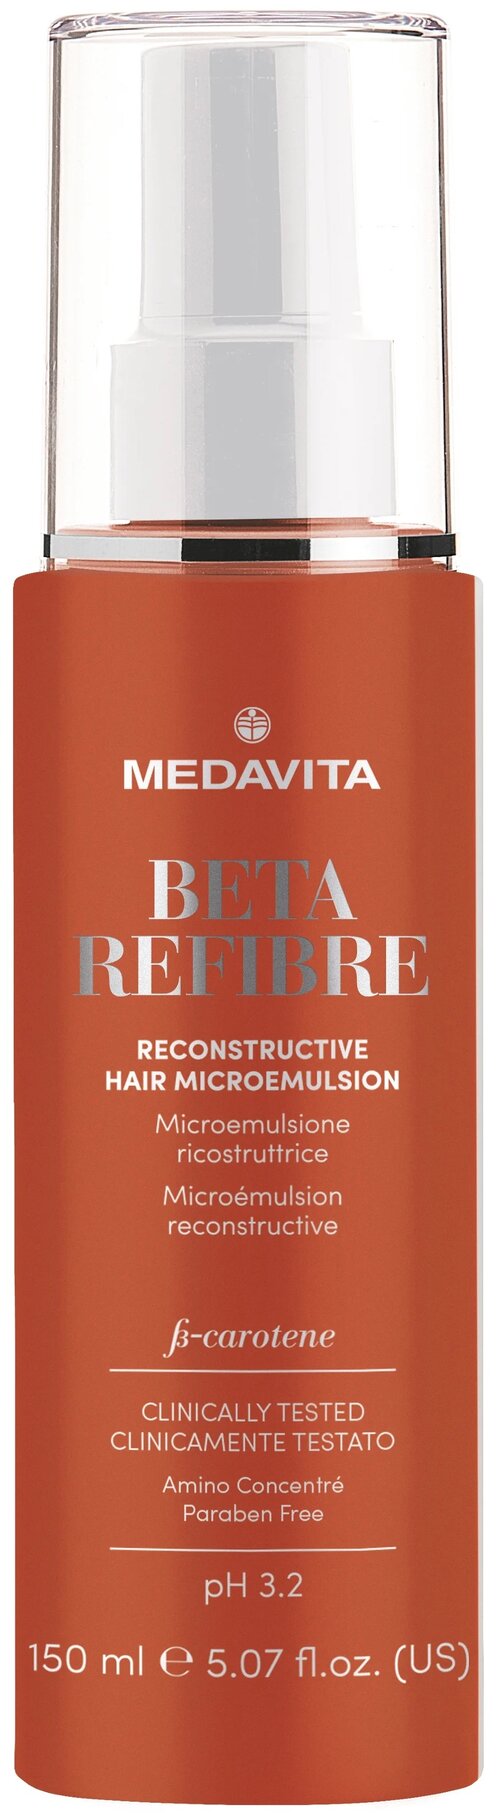 MedaVita Восстанавливающая микро-эмульсия для повреждённых волос Beta-Refibre, 150 мл, аэрозоль